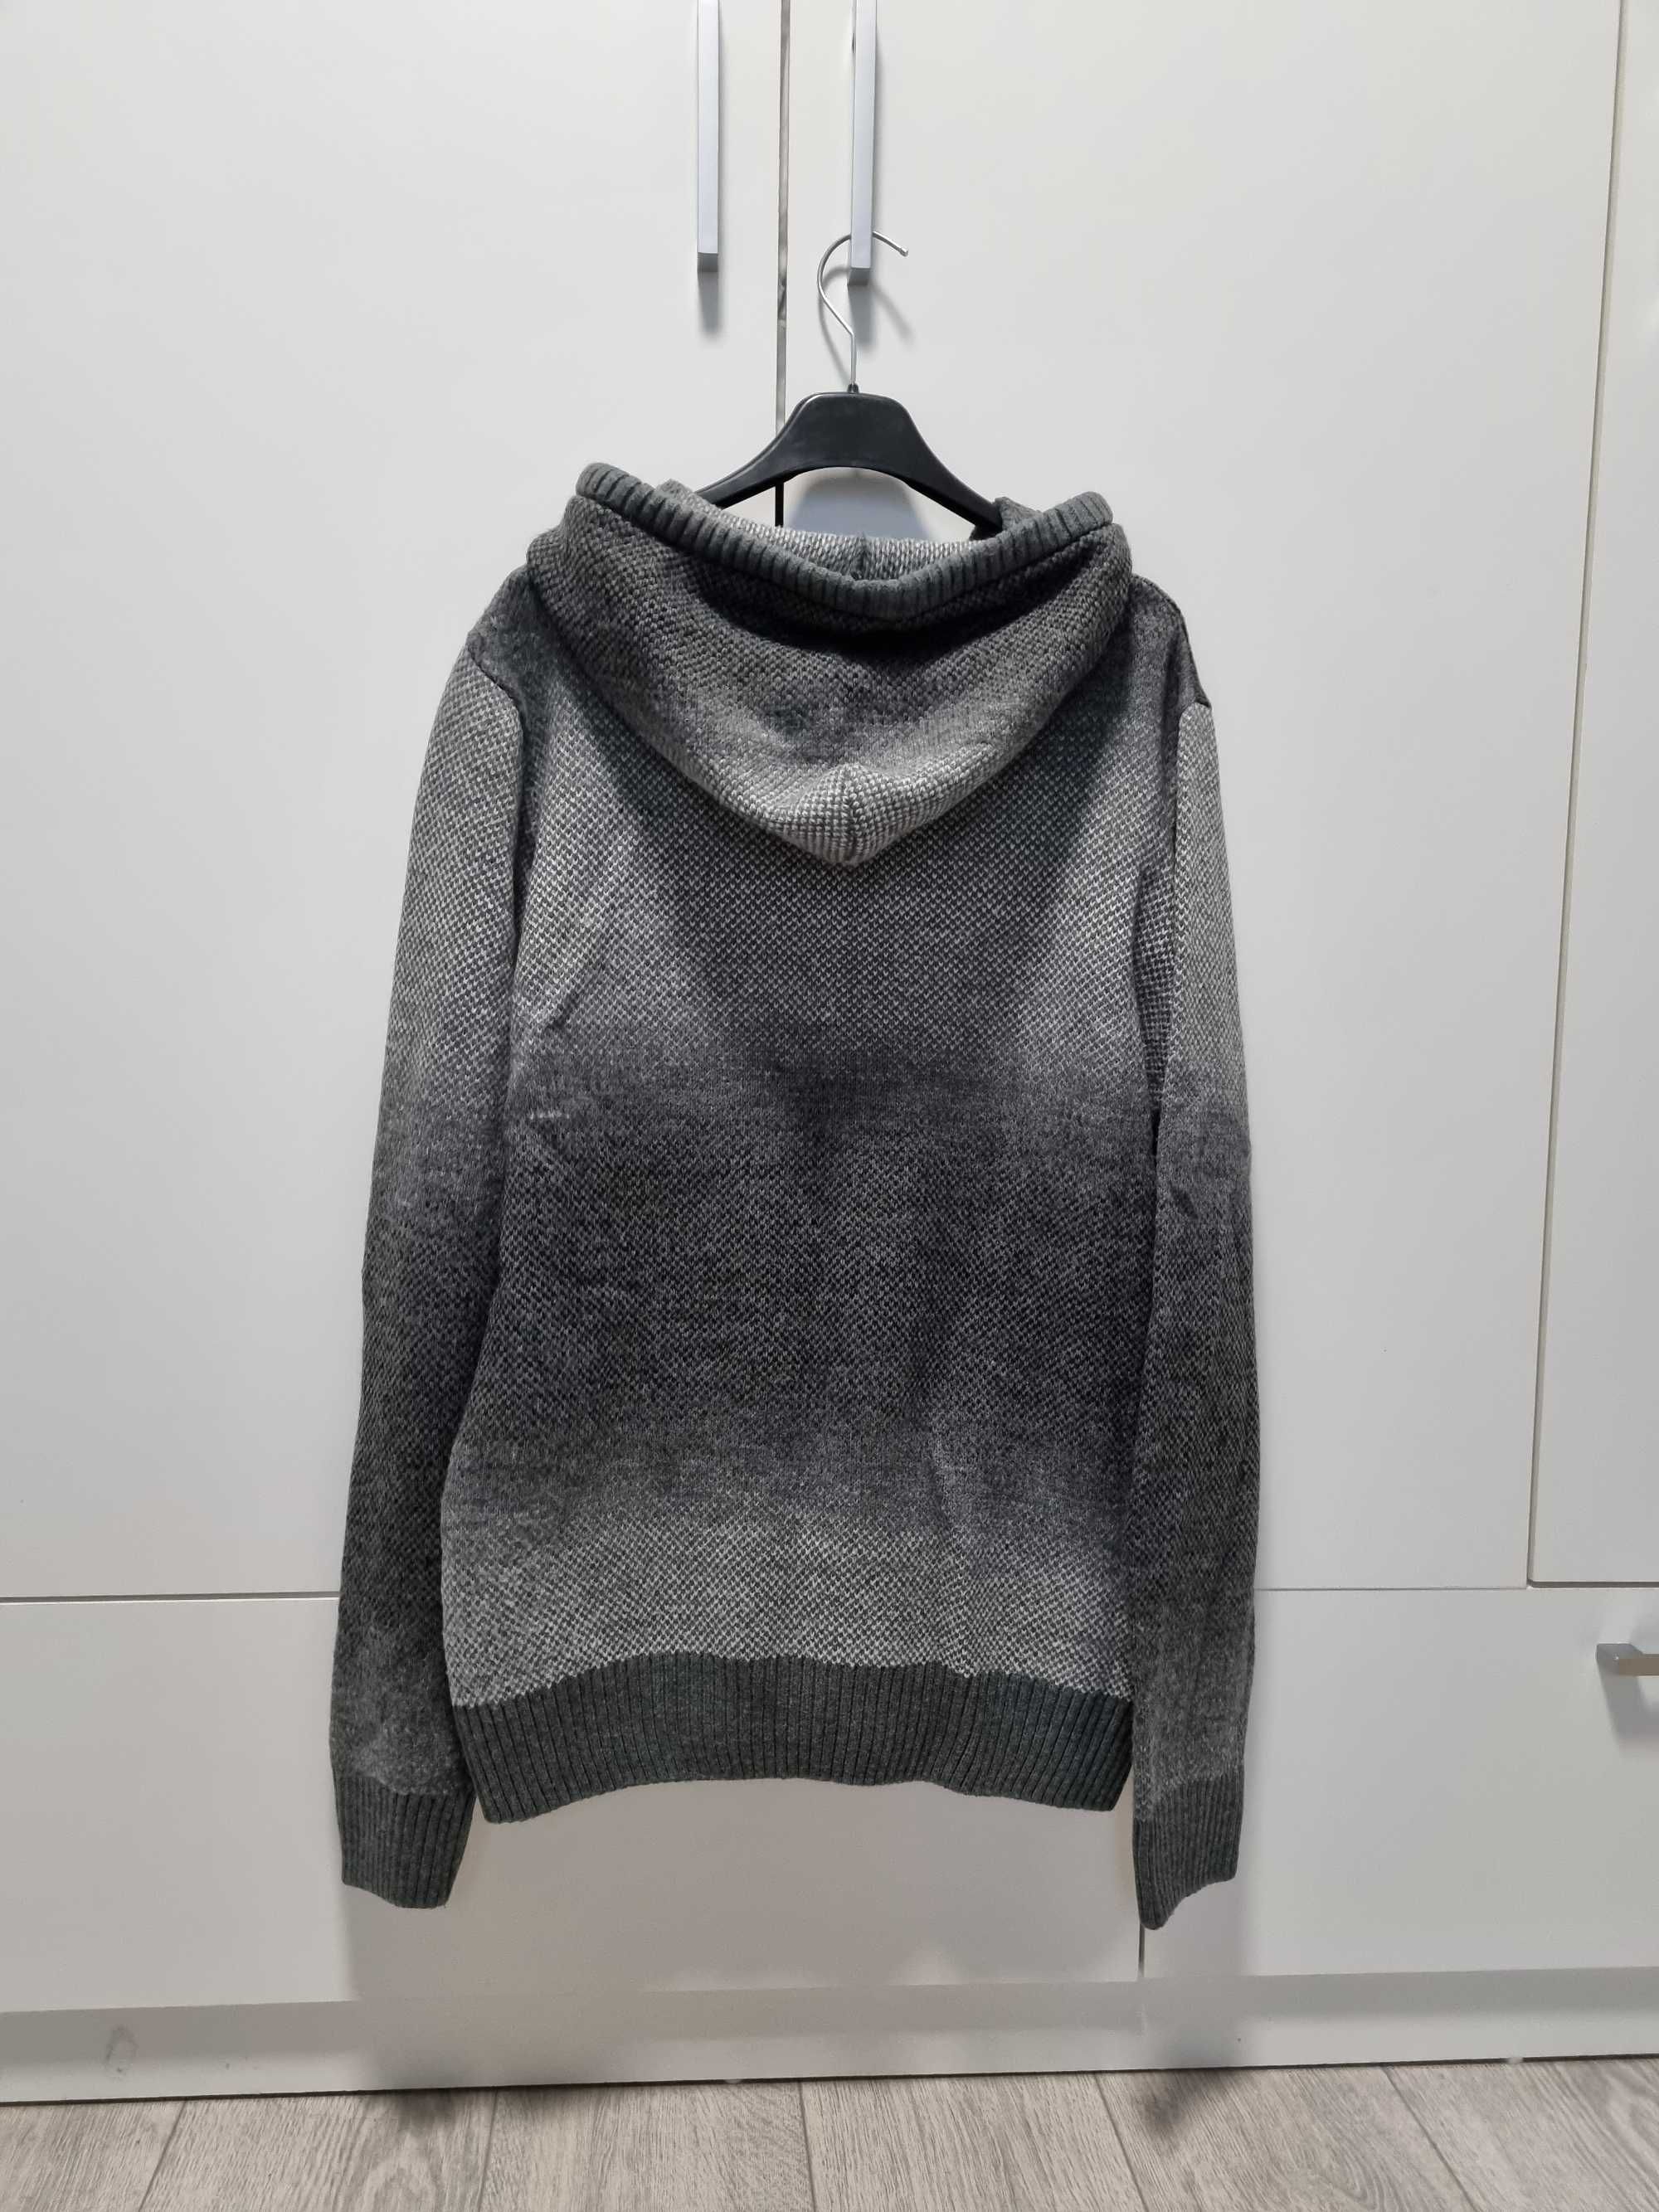 Hanorac gros/pulover Lc waikiki [XL]